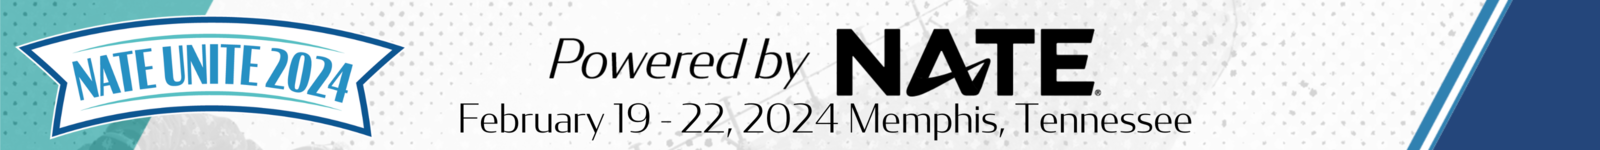 NATE UNITE 2024 logo